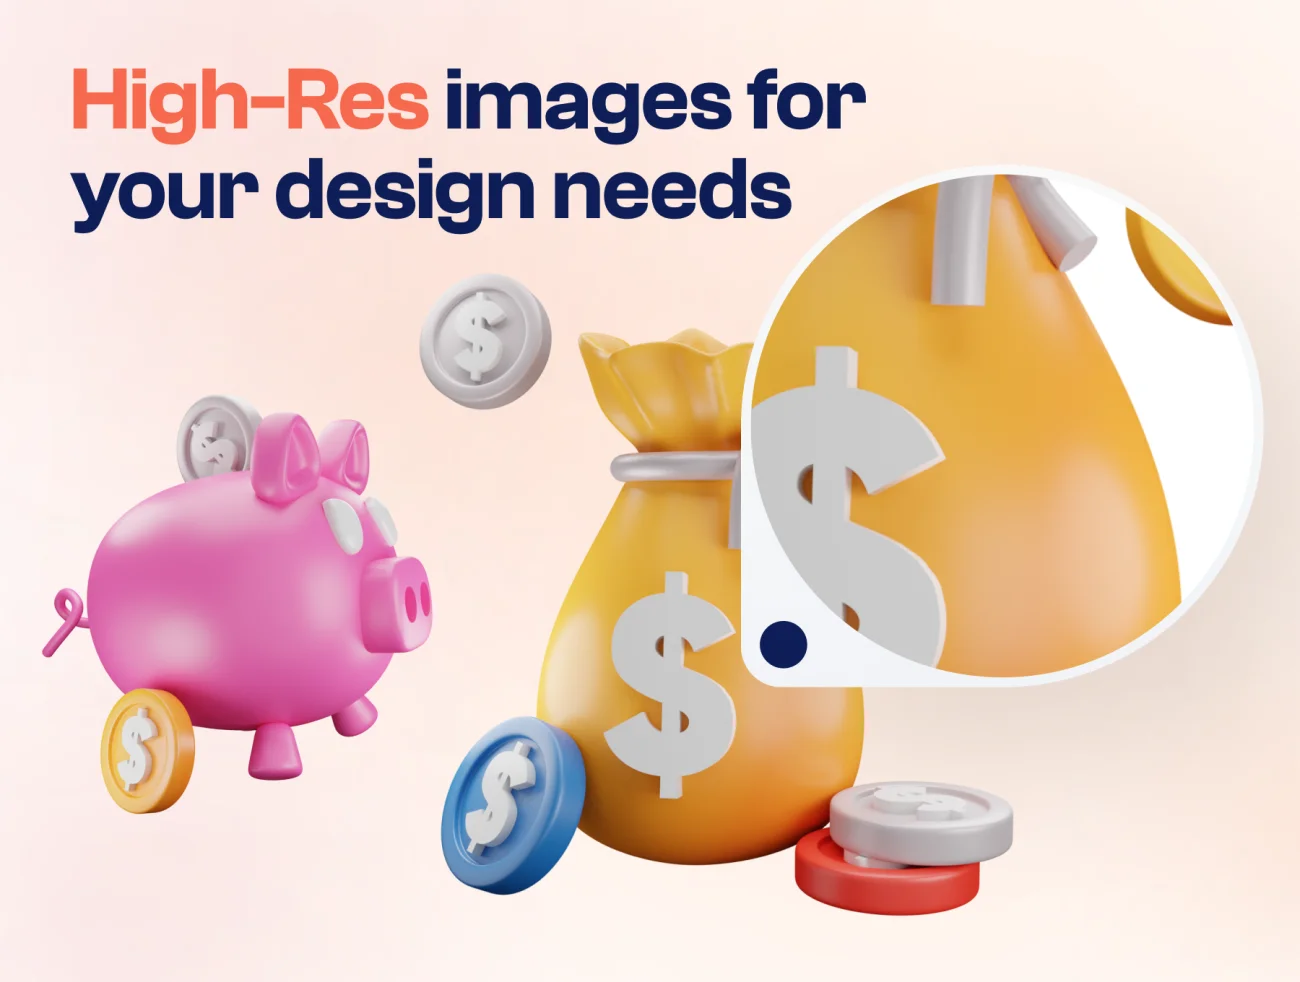 货币钱袋金币钱包3D图标套装 Mony - Money & Currency 3D Icon Set blender格式-3D/图标-到位啦UI